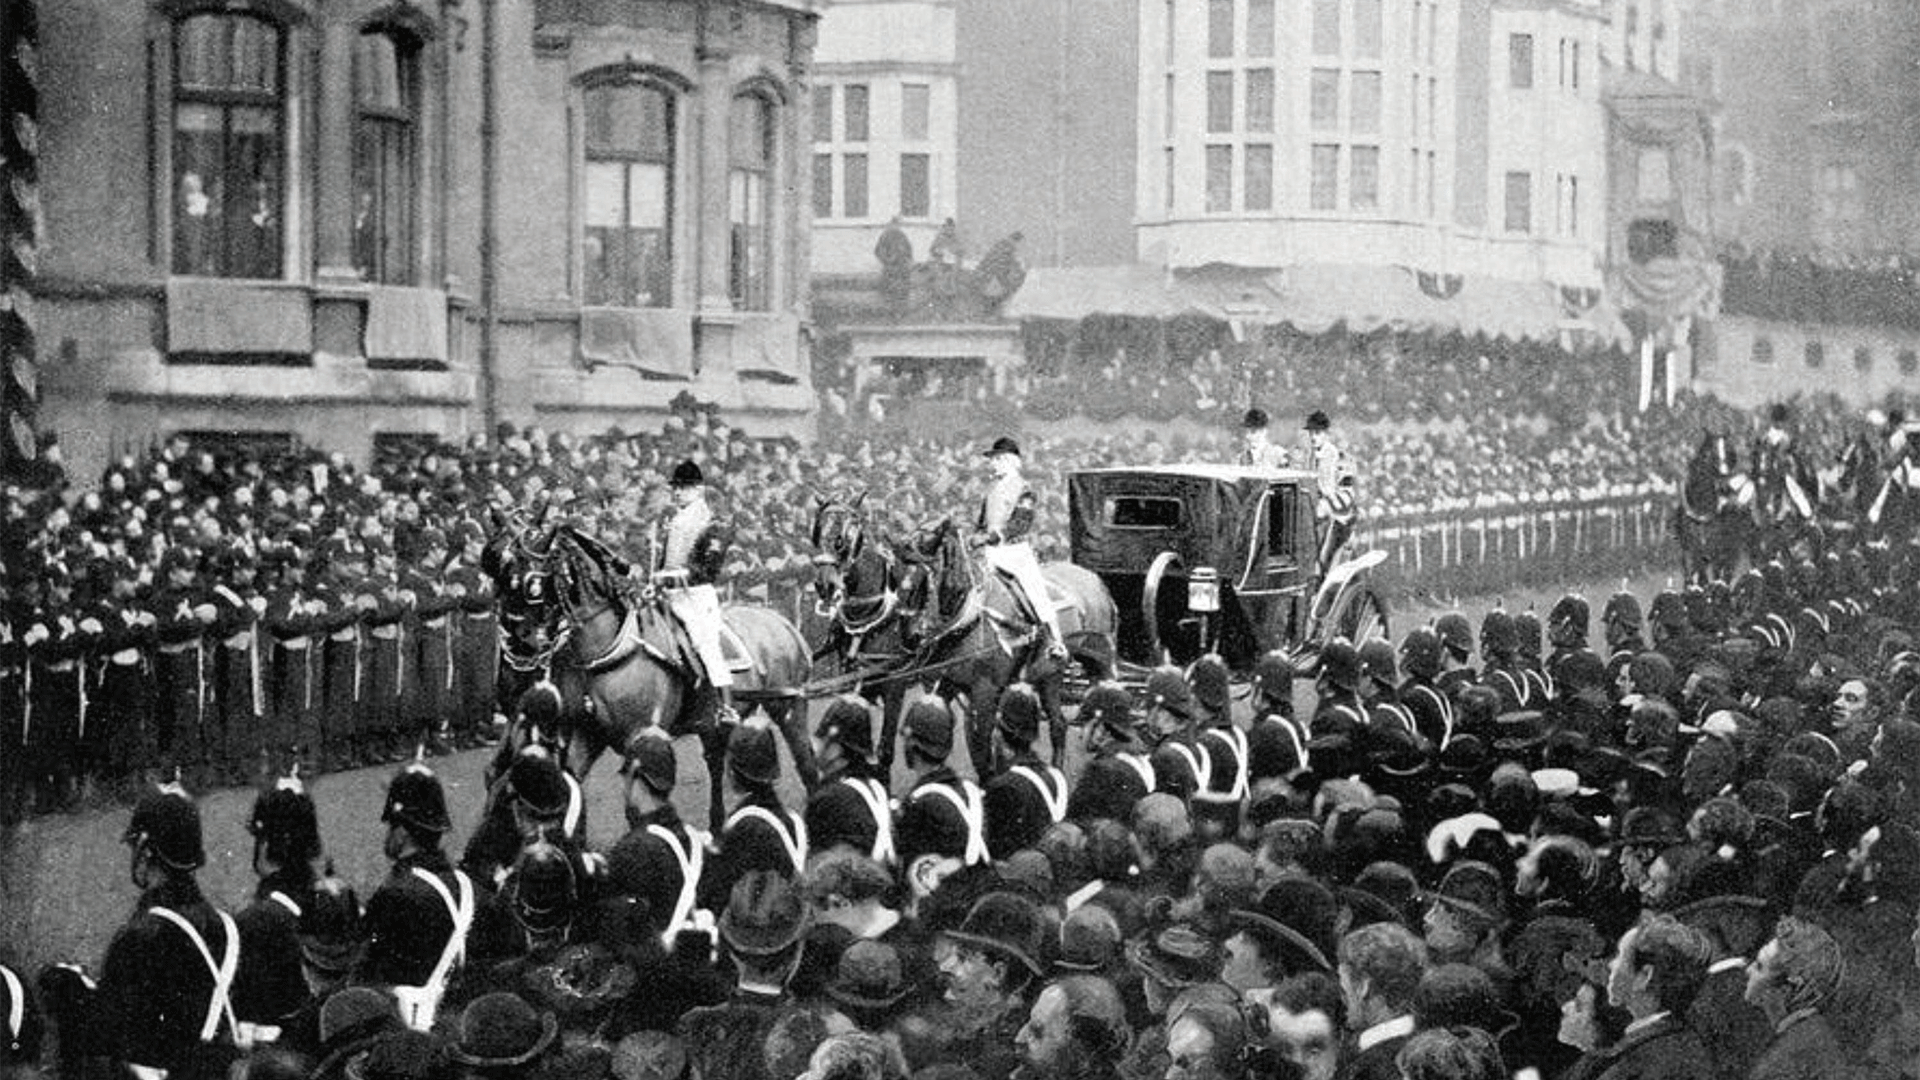 Queen Victoria’s funeral in 1901